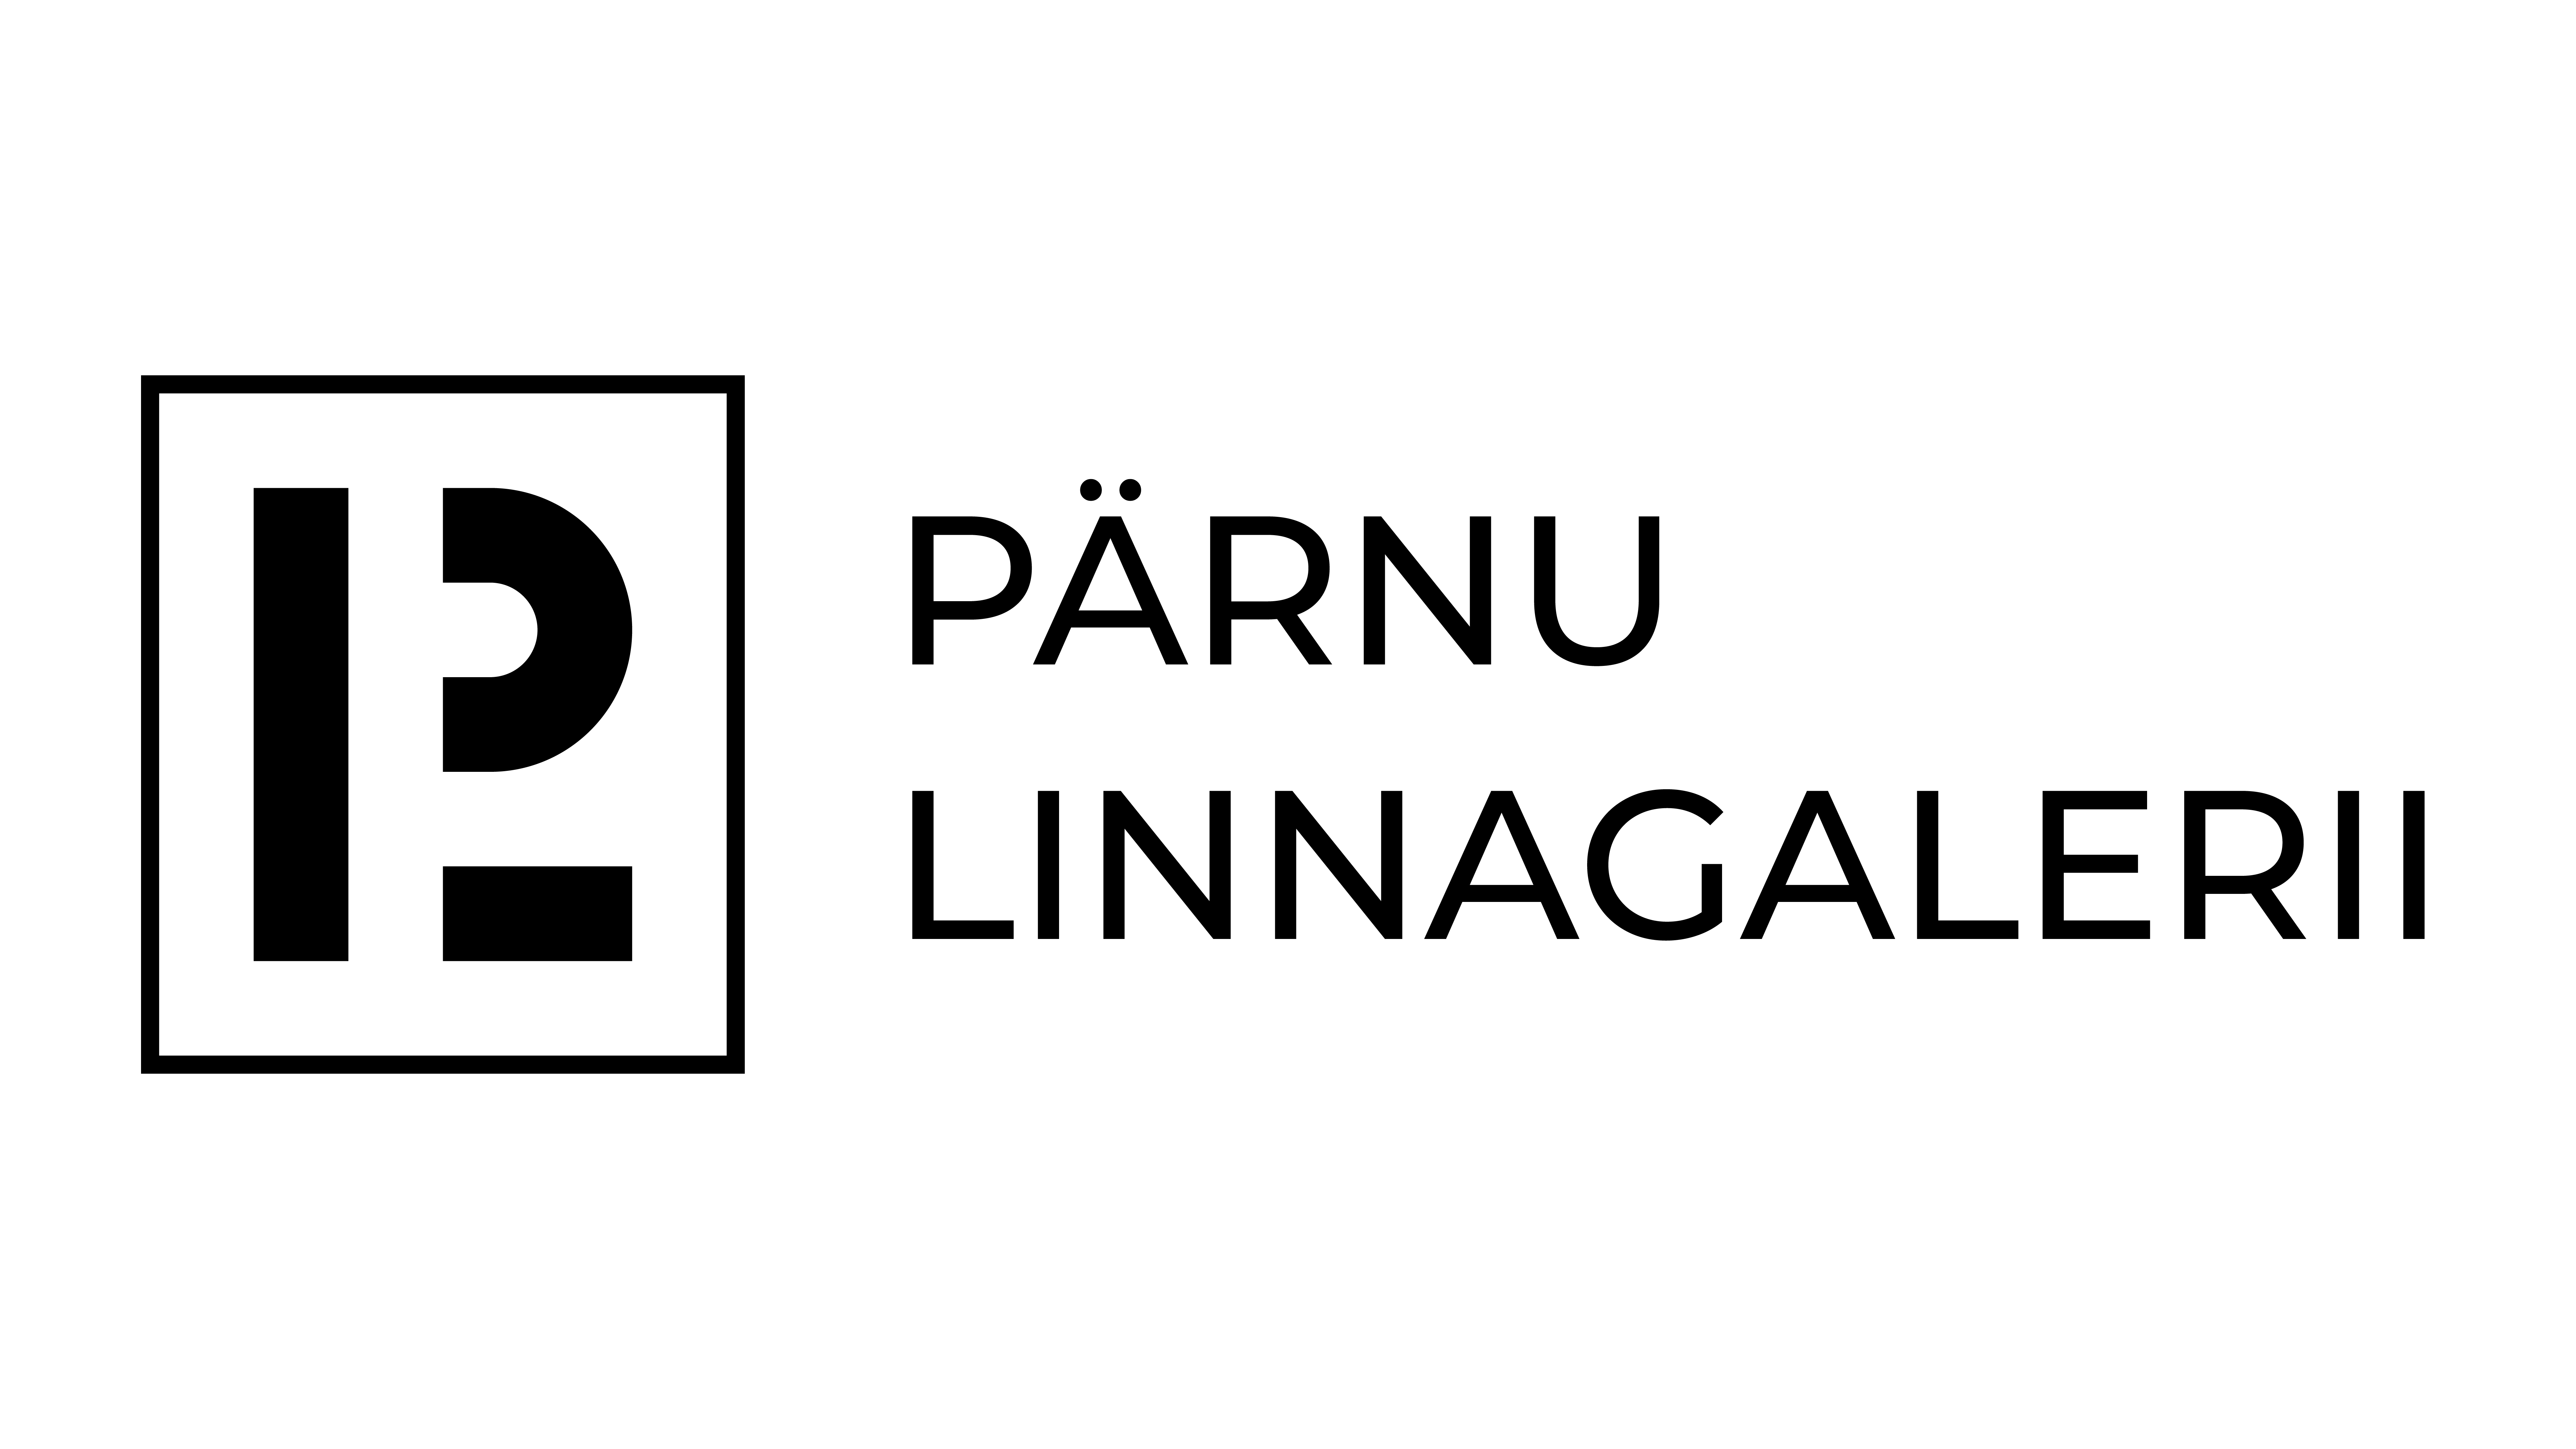 Pärnu Linnagalerii Website Long Logo